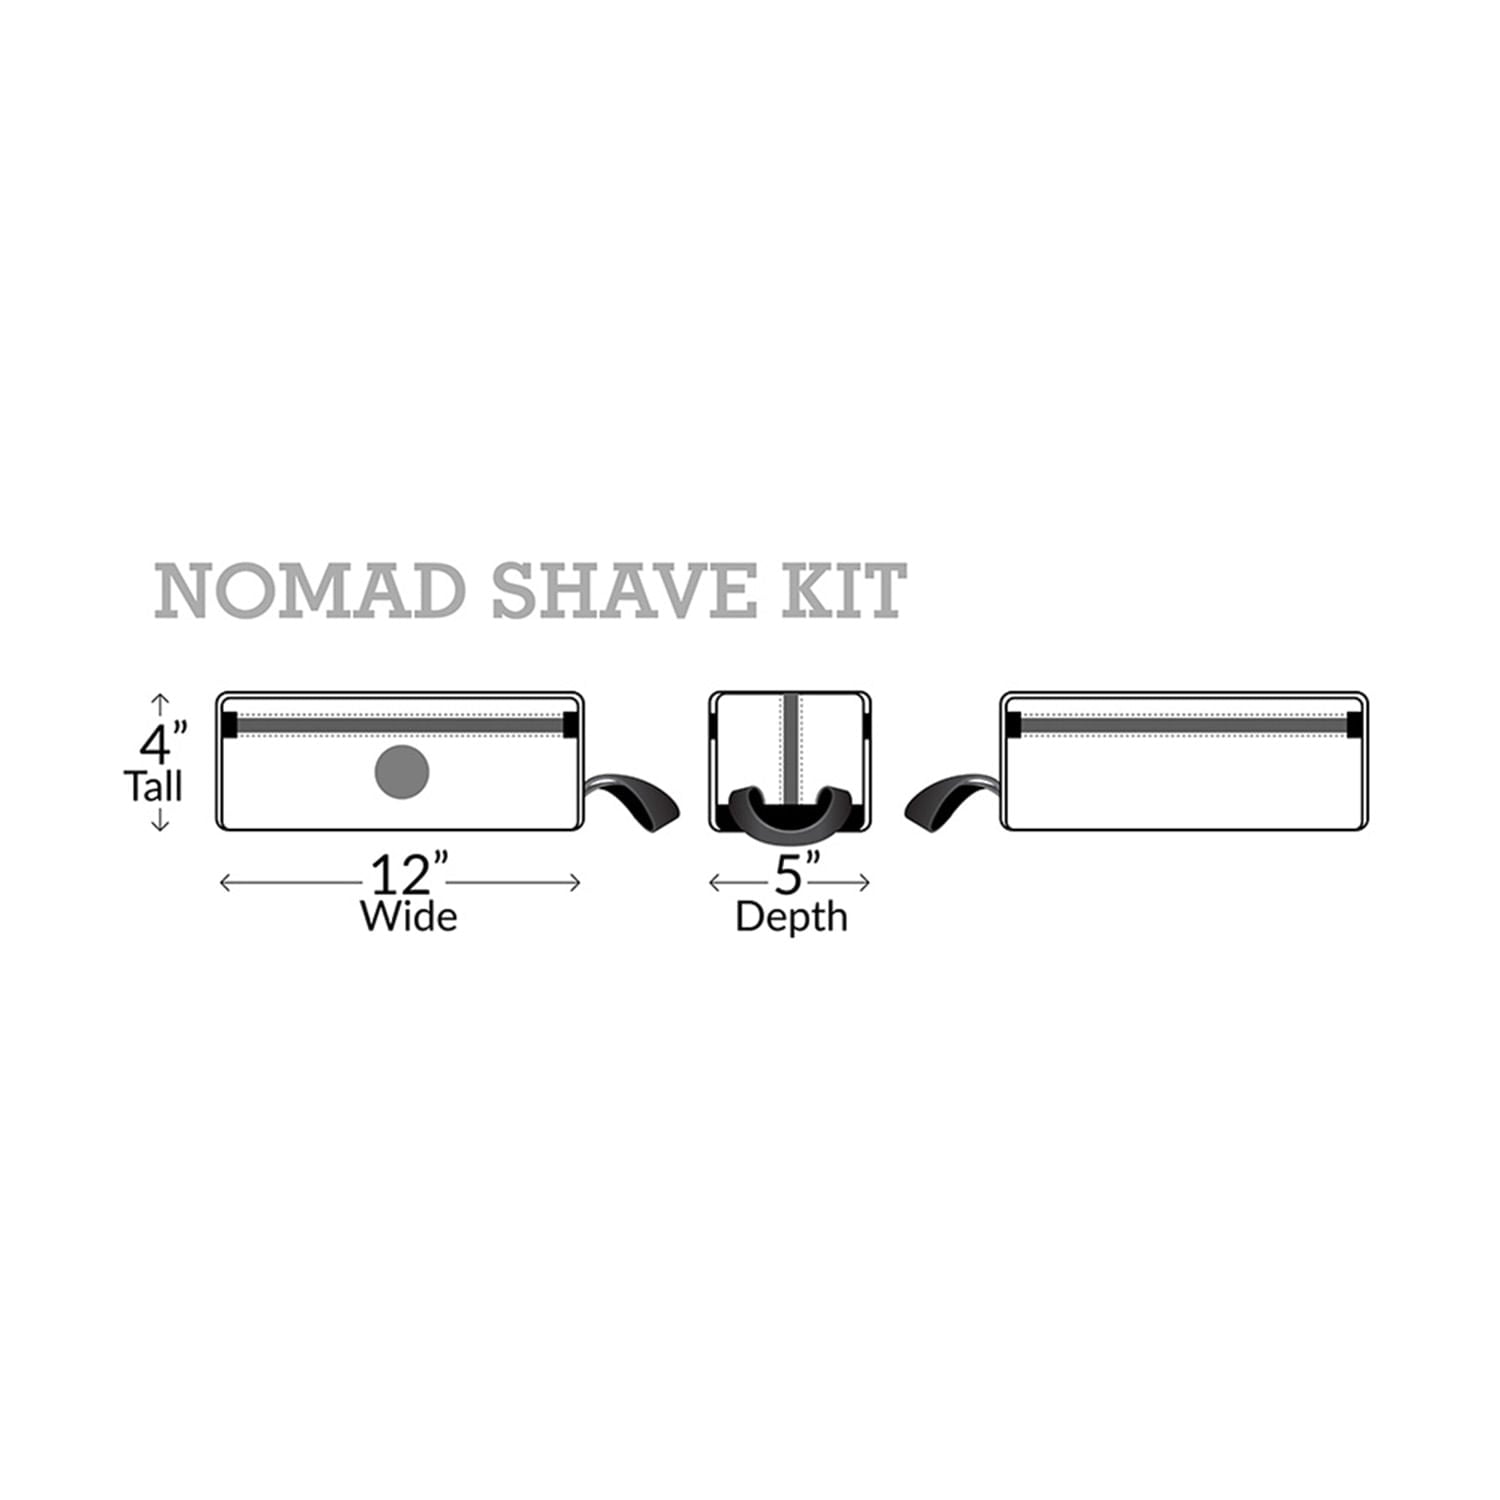 Nomad Shave Kit